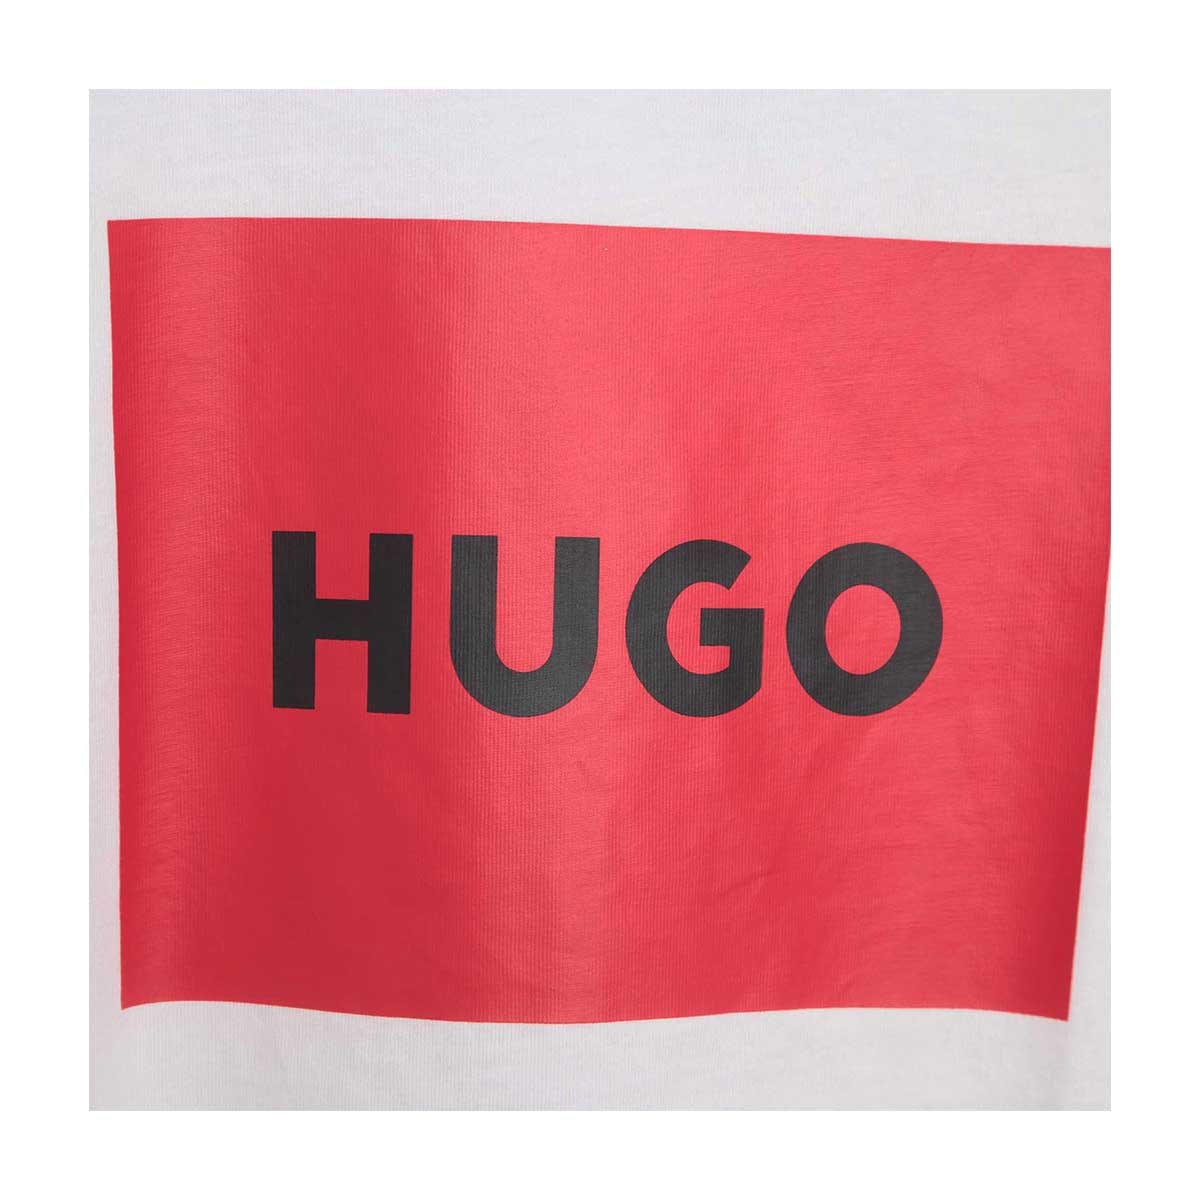 חולצת טי שרט HUGO לוגו בריבוע לילדים